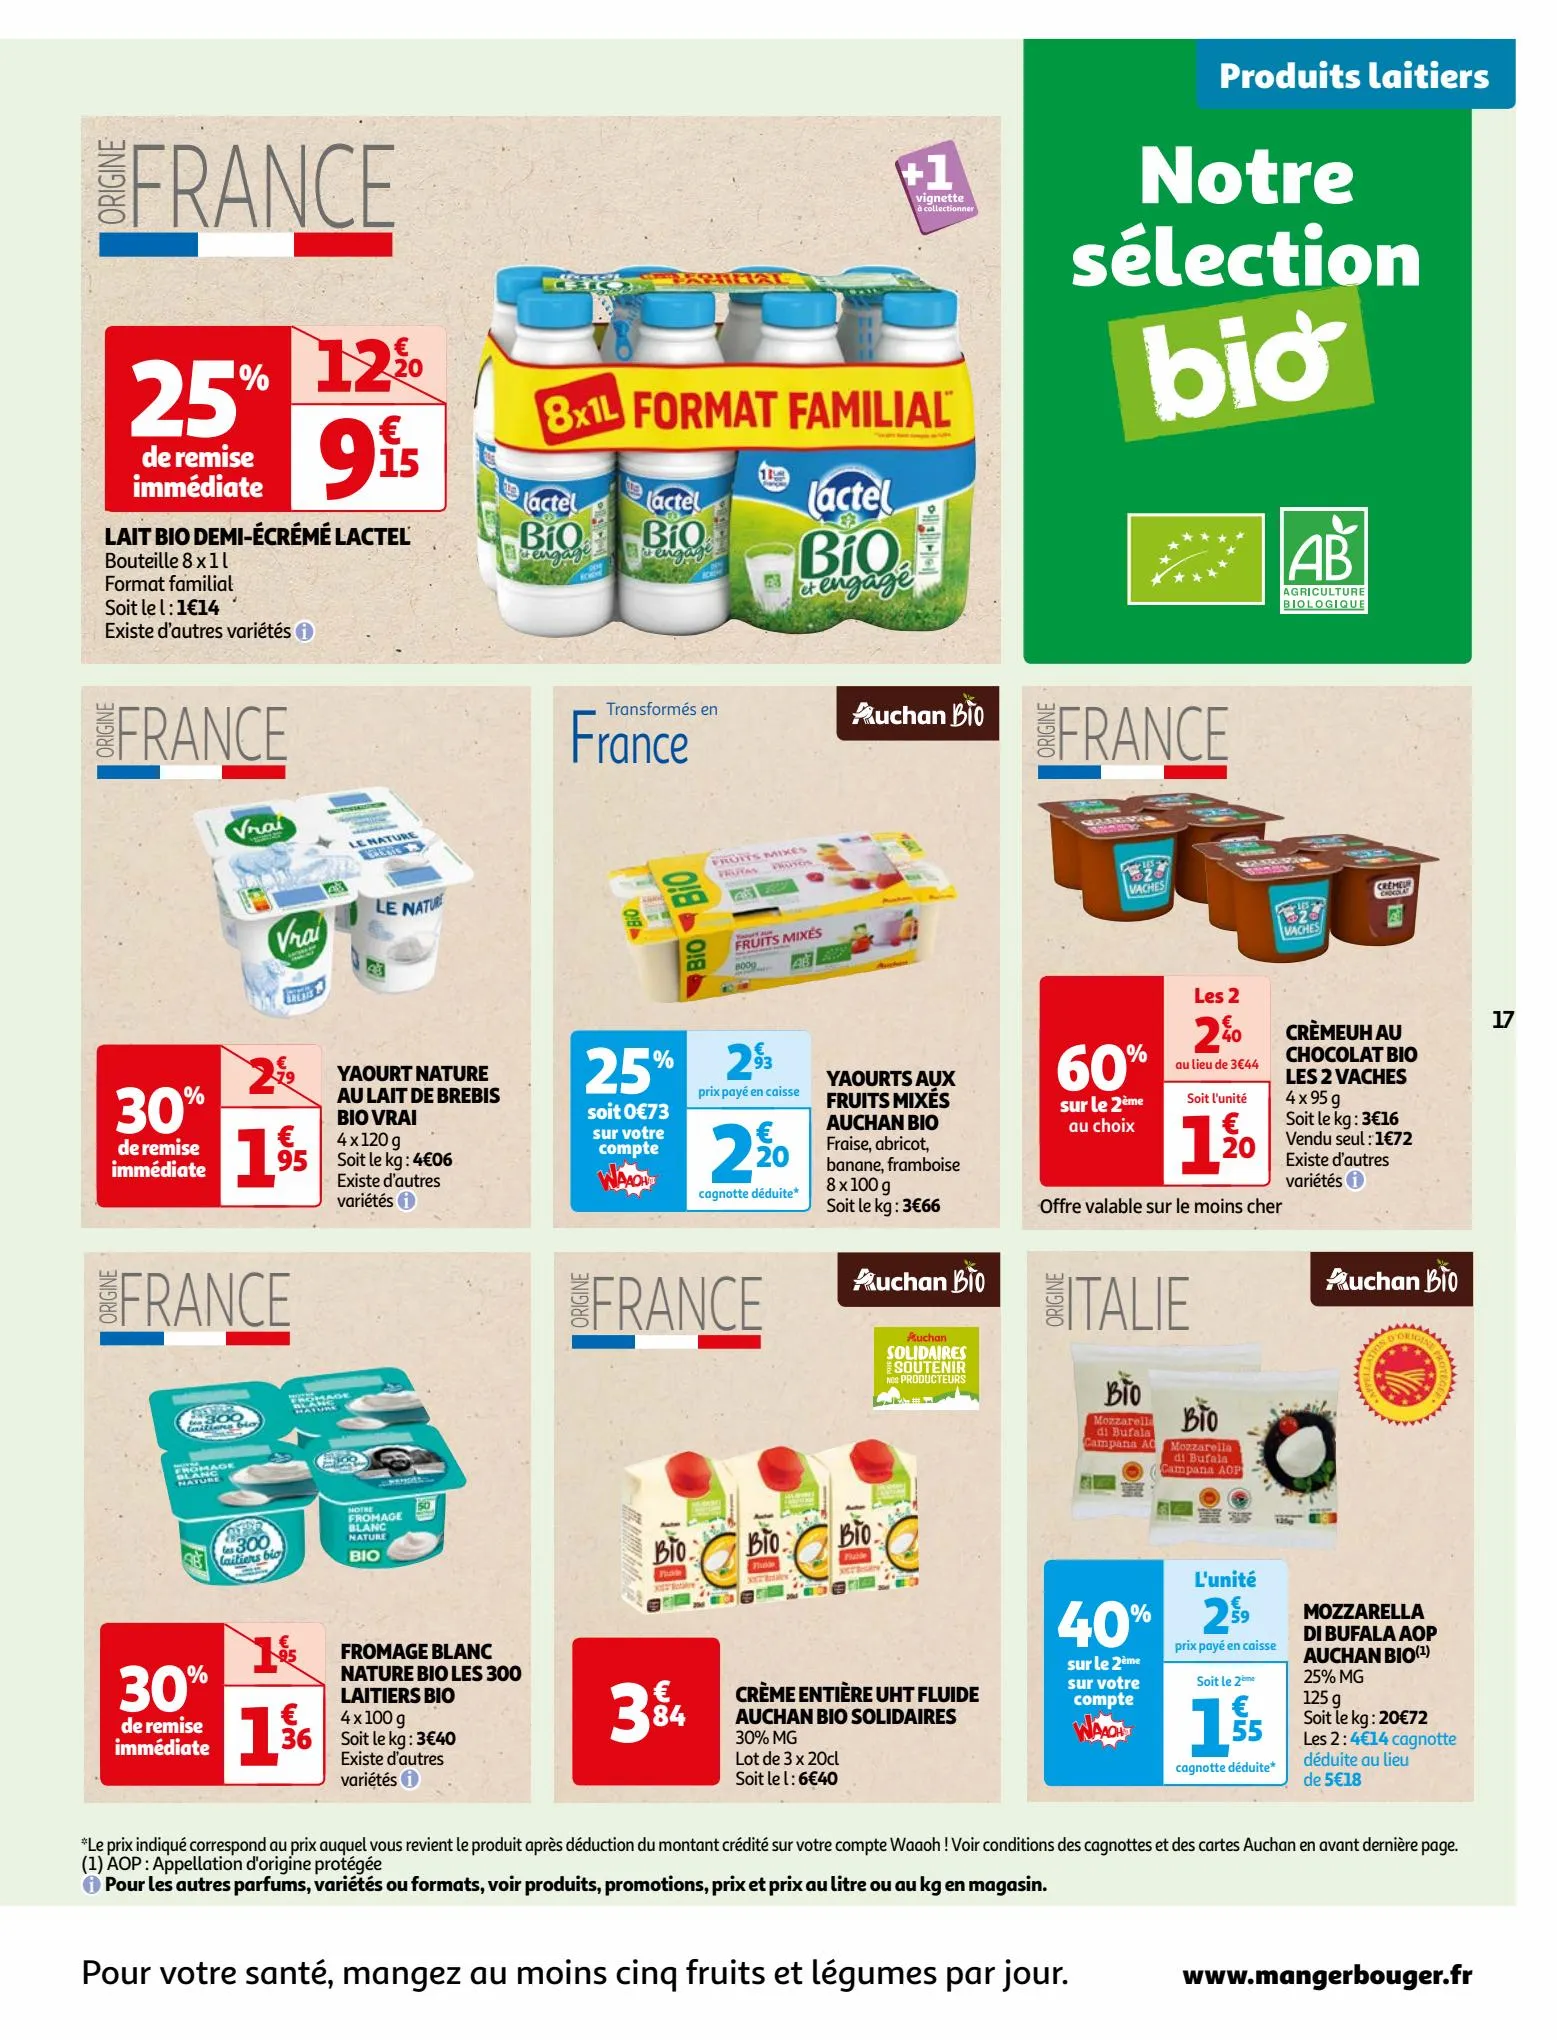 Catalogue Vos produits laitiers à petits prix !, page 00017